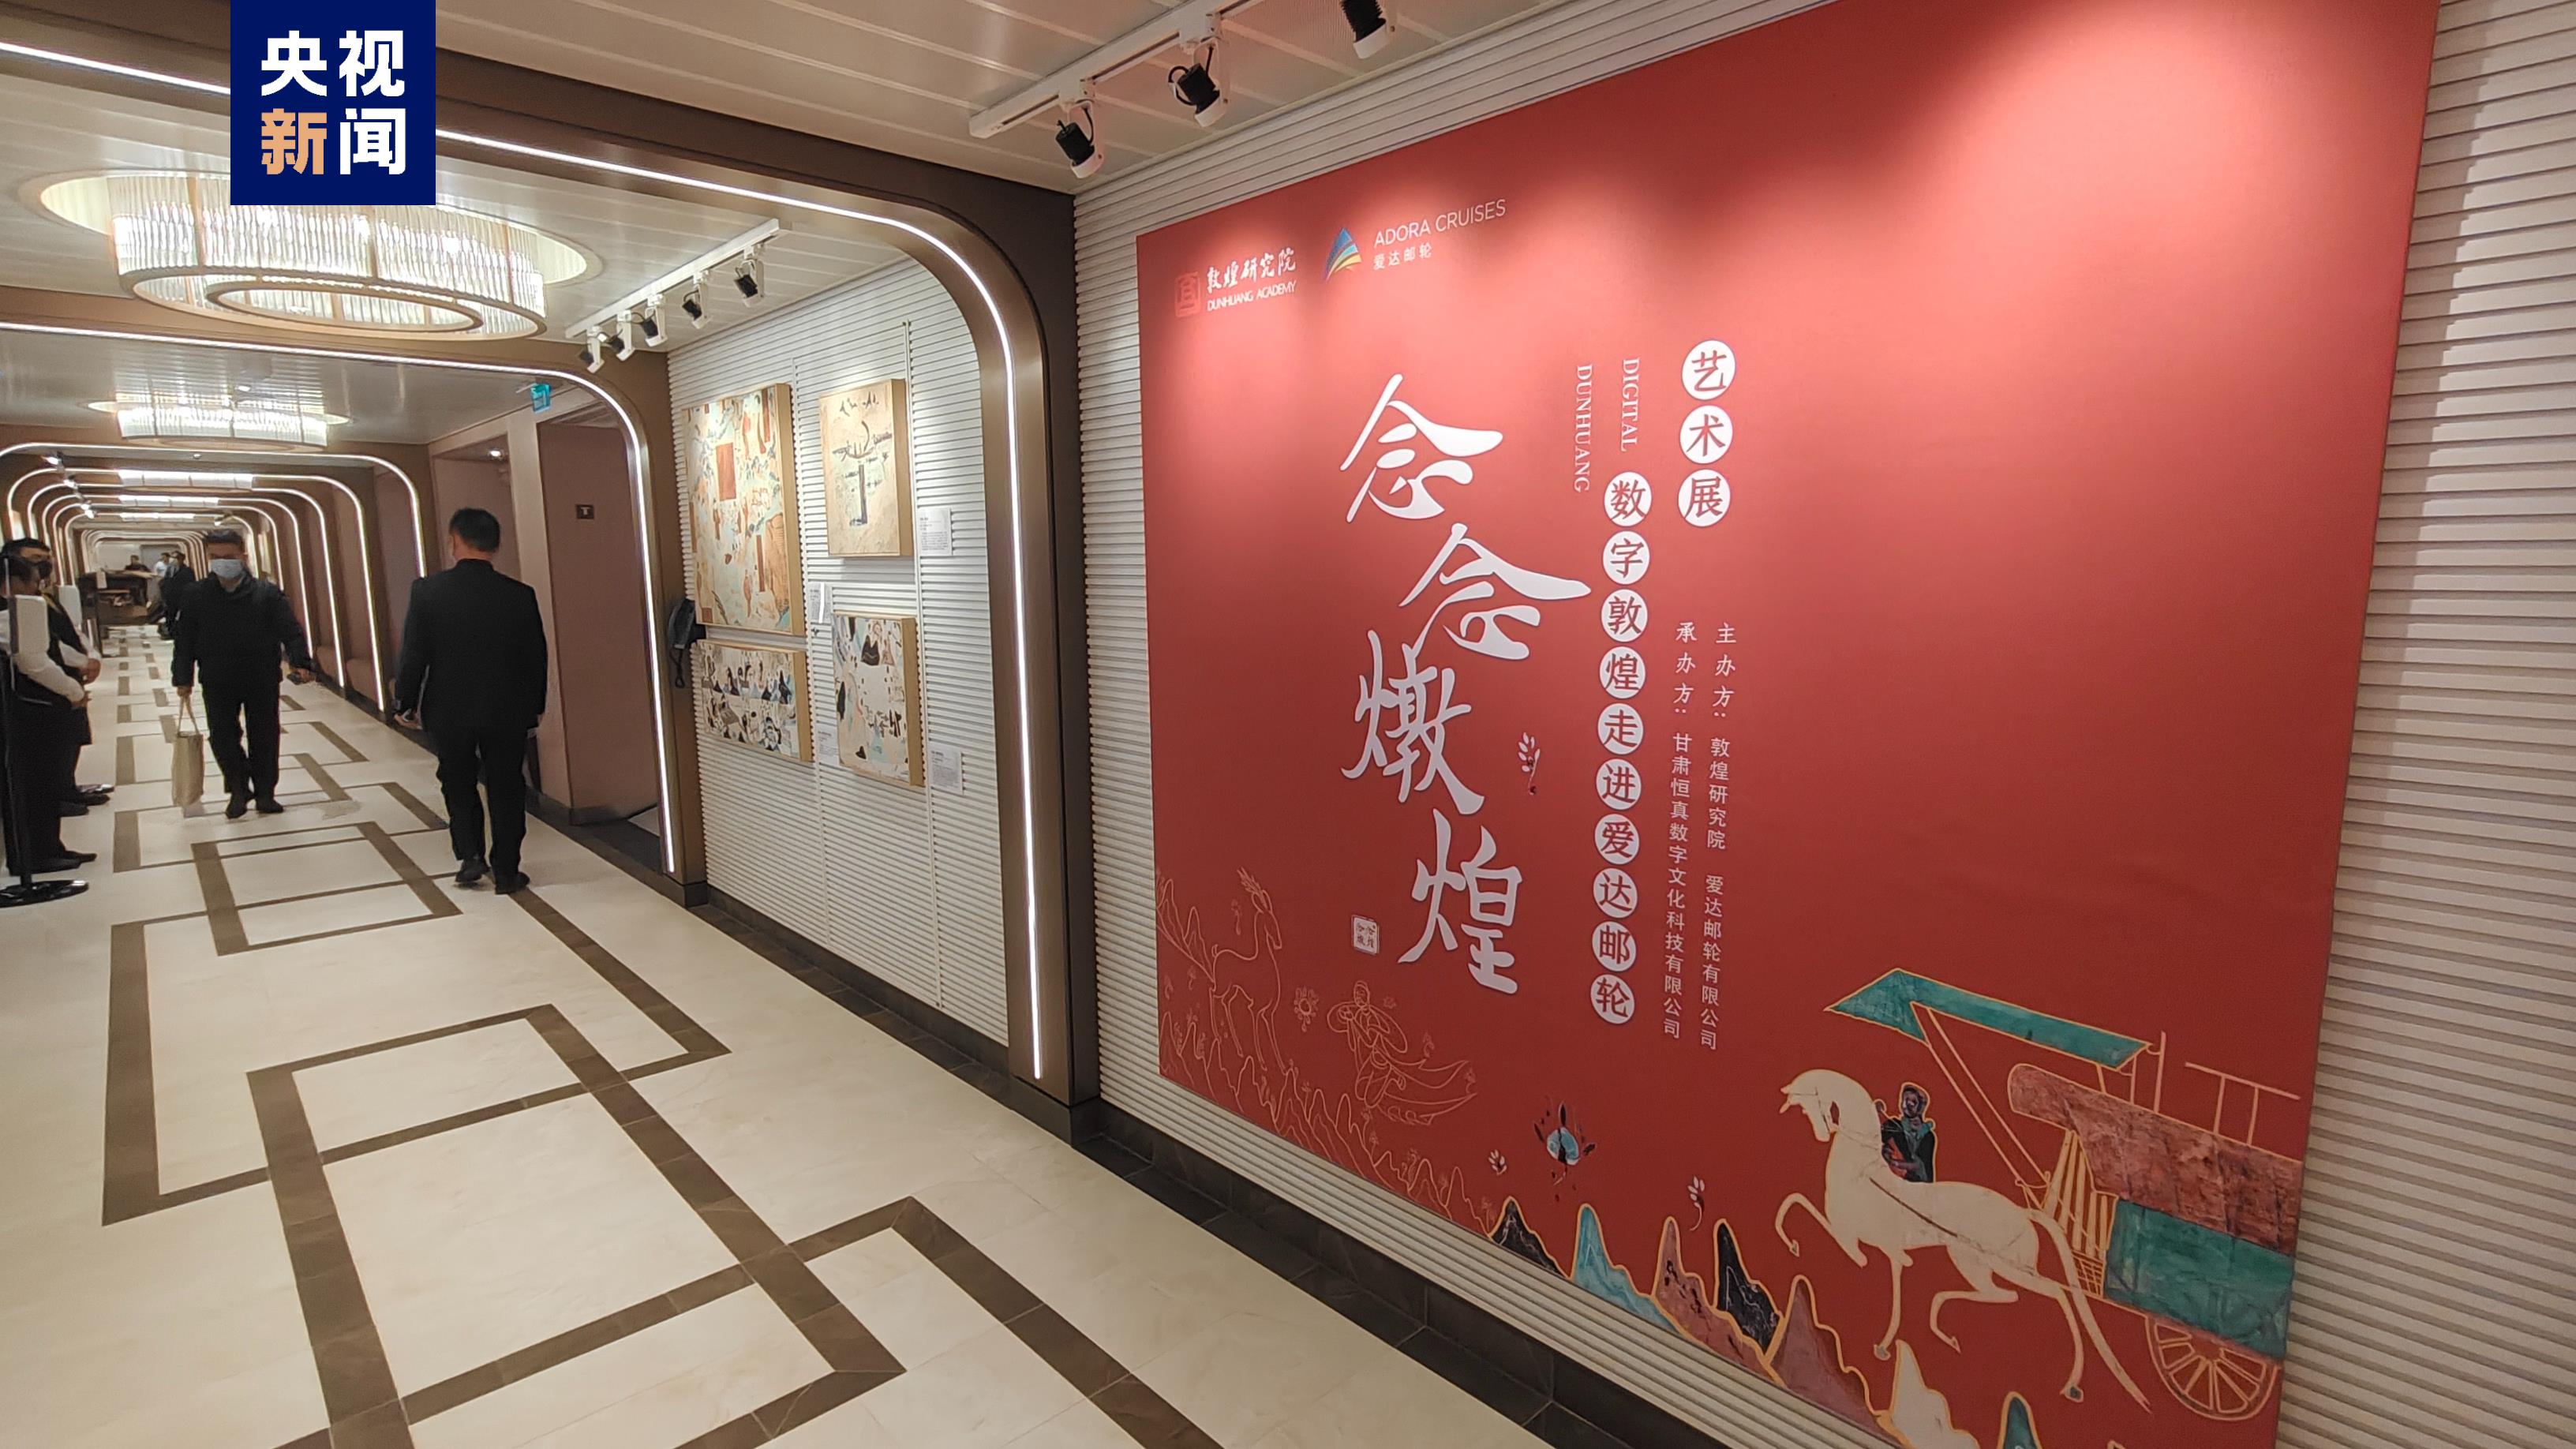 樊锦诗担任首艘国产大型邮轮启航大使 16幅敦煌壁画亮相邮轮